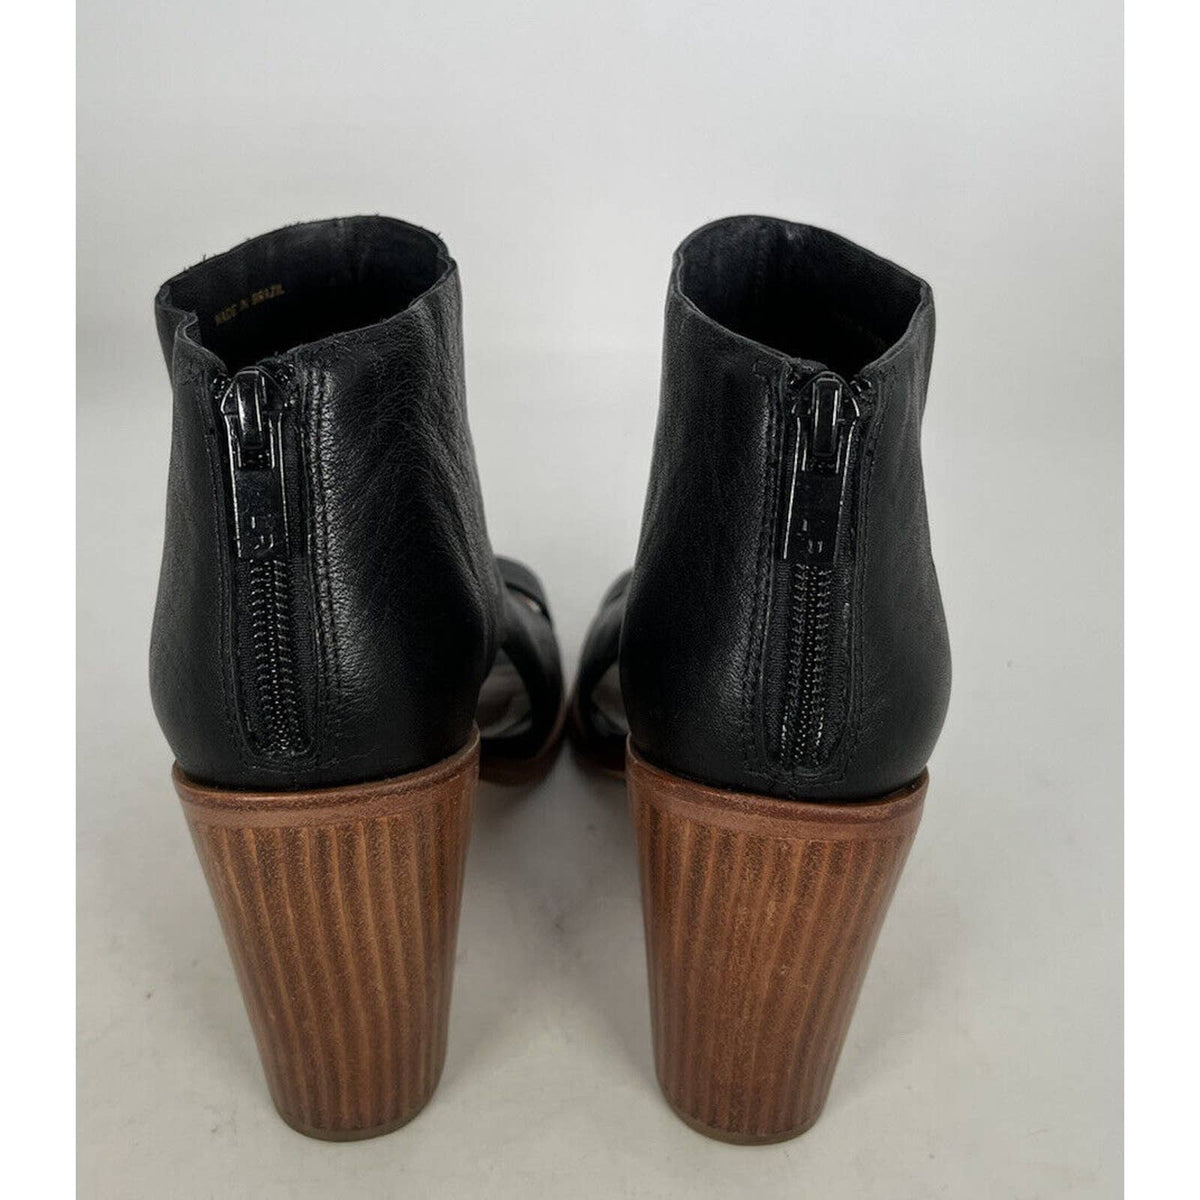 Loeffler Randall Peep Toe Black Leather Booties Sz.6.5